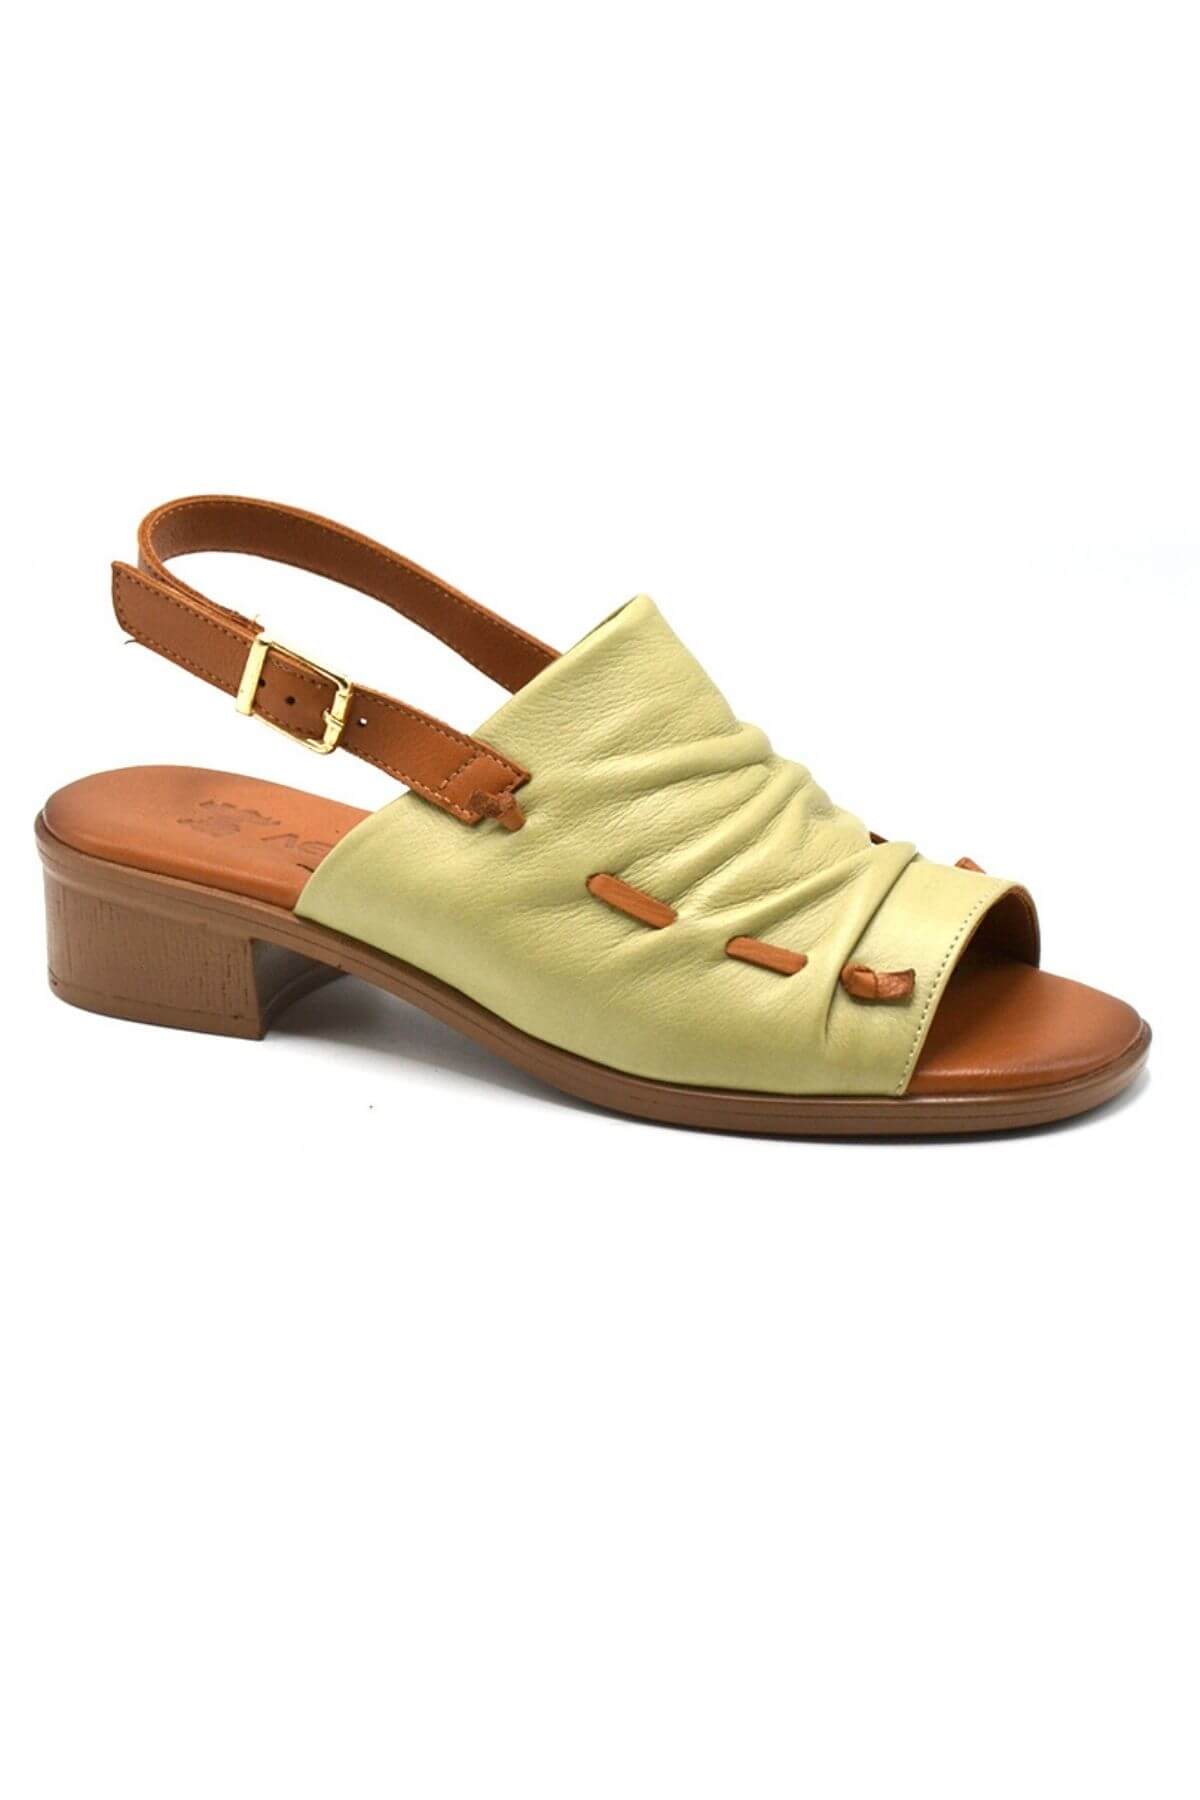 Kadın Deri Sandalet S.Yeşili 23026021Y - Thumbnail